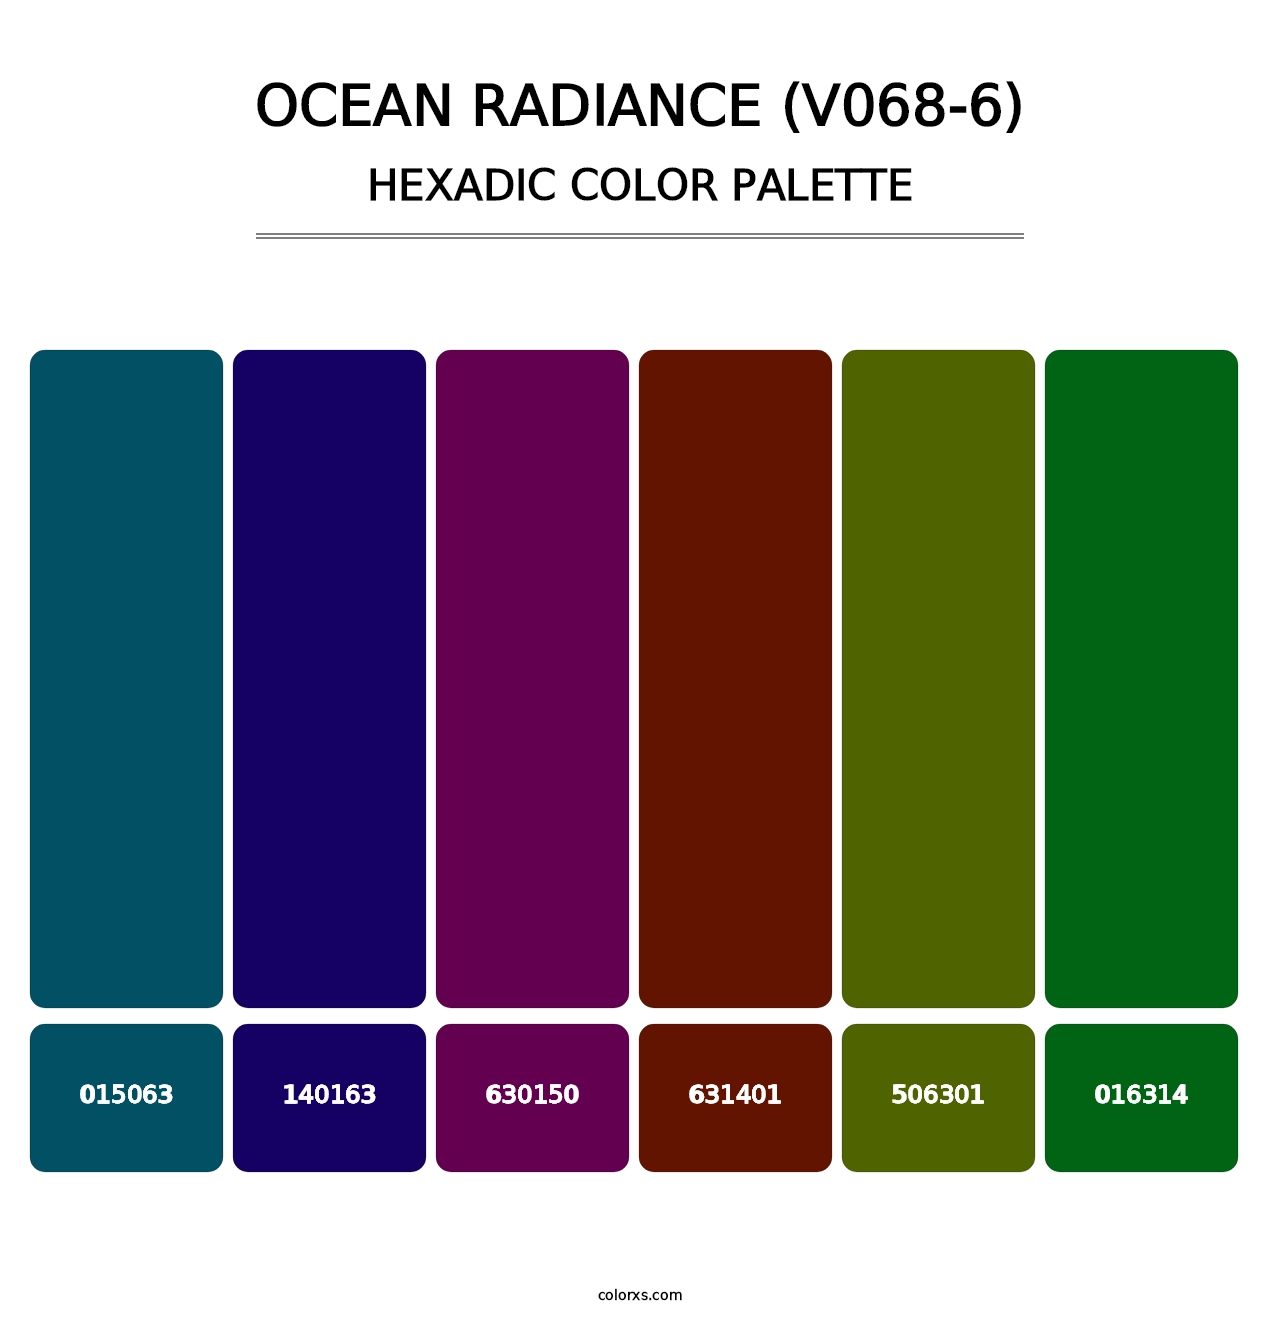 Ocean Radiance (V068-6) - Hexadic Color Palette